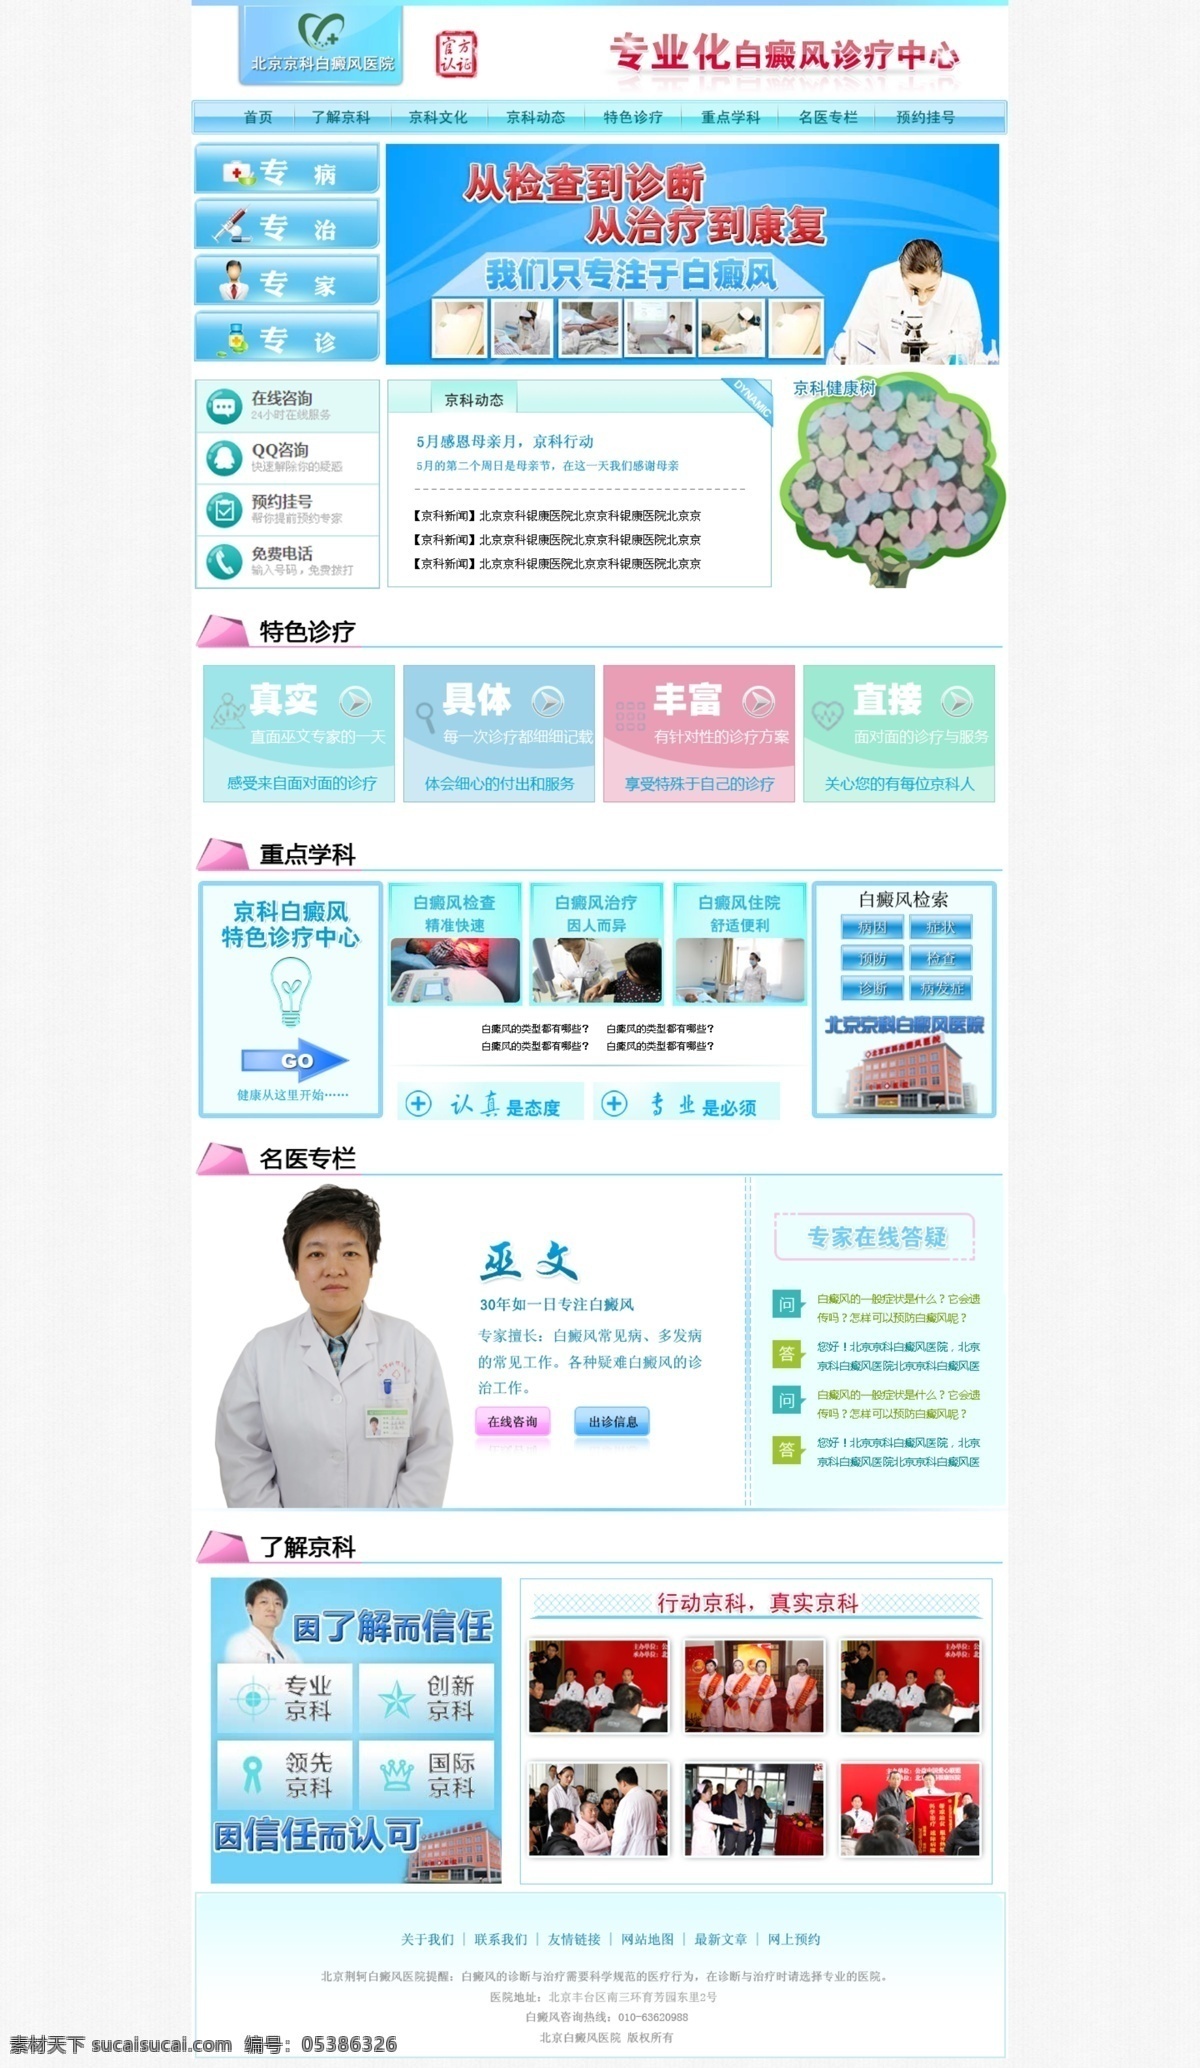 ui 网页模板 网站 医疗网站 源文件 中文模板 专题 专题页面 医疗 页面 模板下载 网页素材